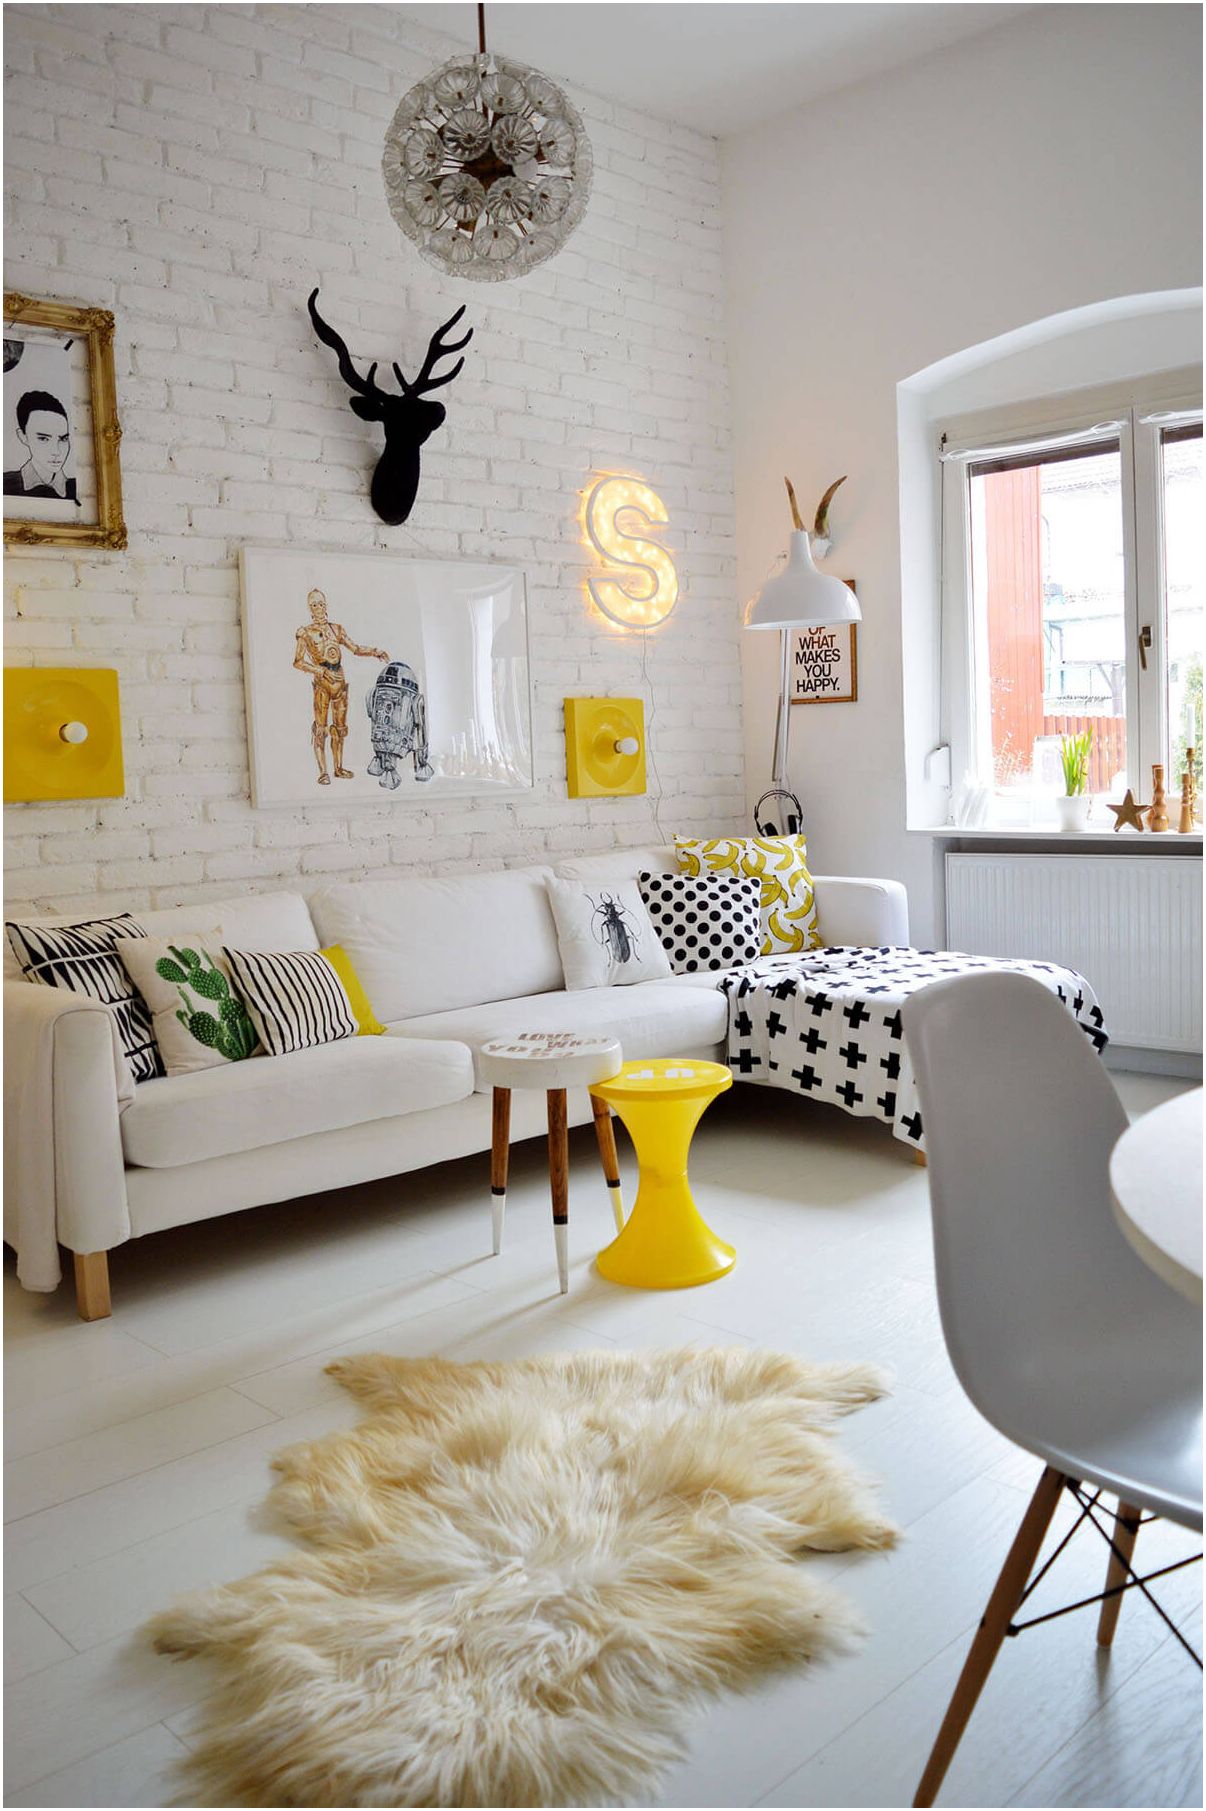 Obývací pokoj 12 m2. m: interiér kompaktních místností v dovedné improvizaci designu